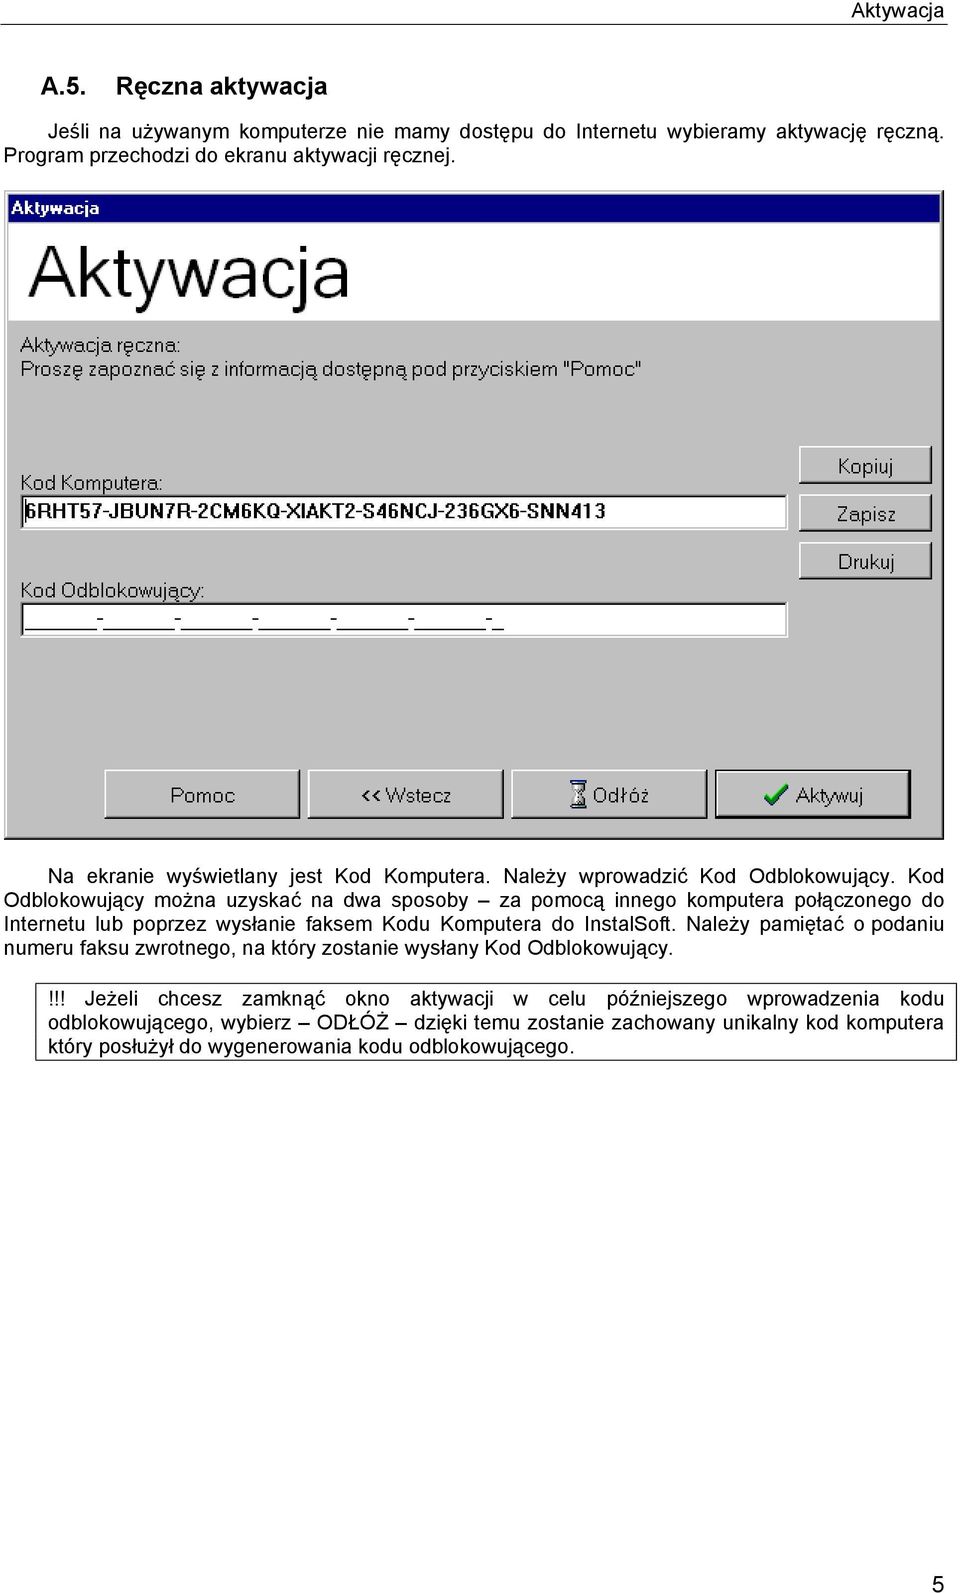 Kod Odblokowujący można uzyskać na dwa sposoby za pomocą innego komputera połączonego do Internetu lub poprzez wysłanie faksem Kodu Komputera do InstalSoft.